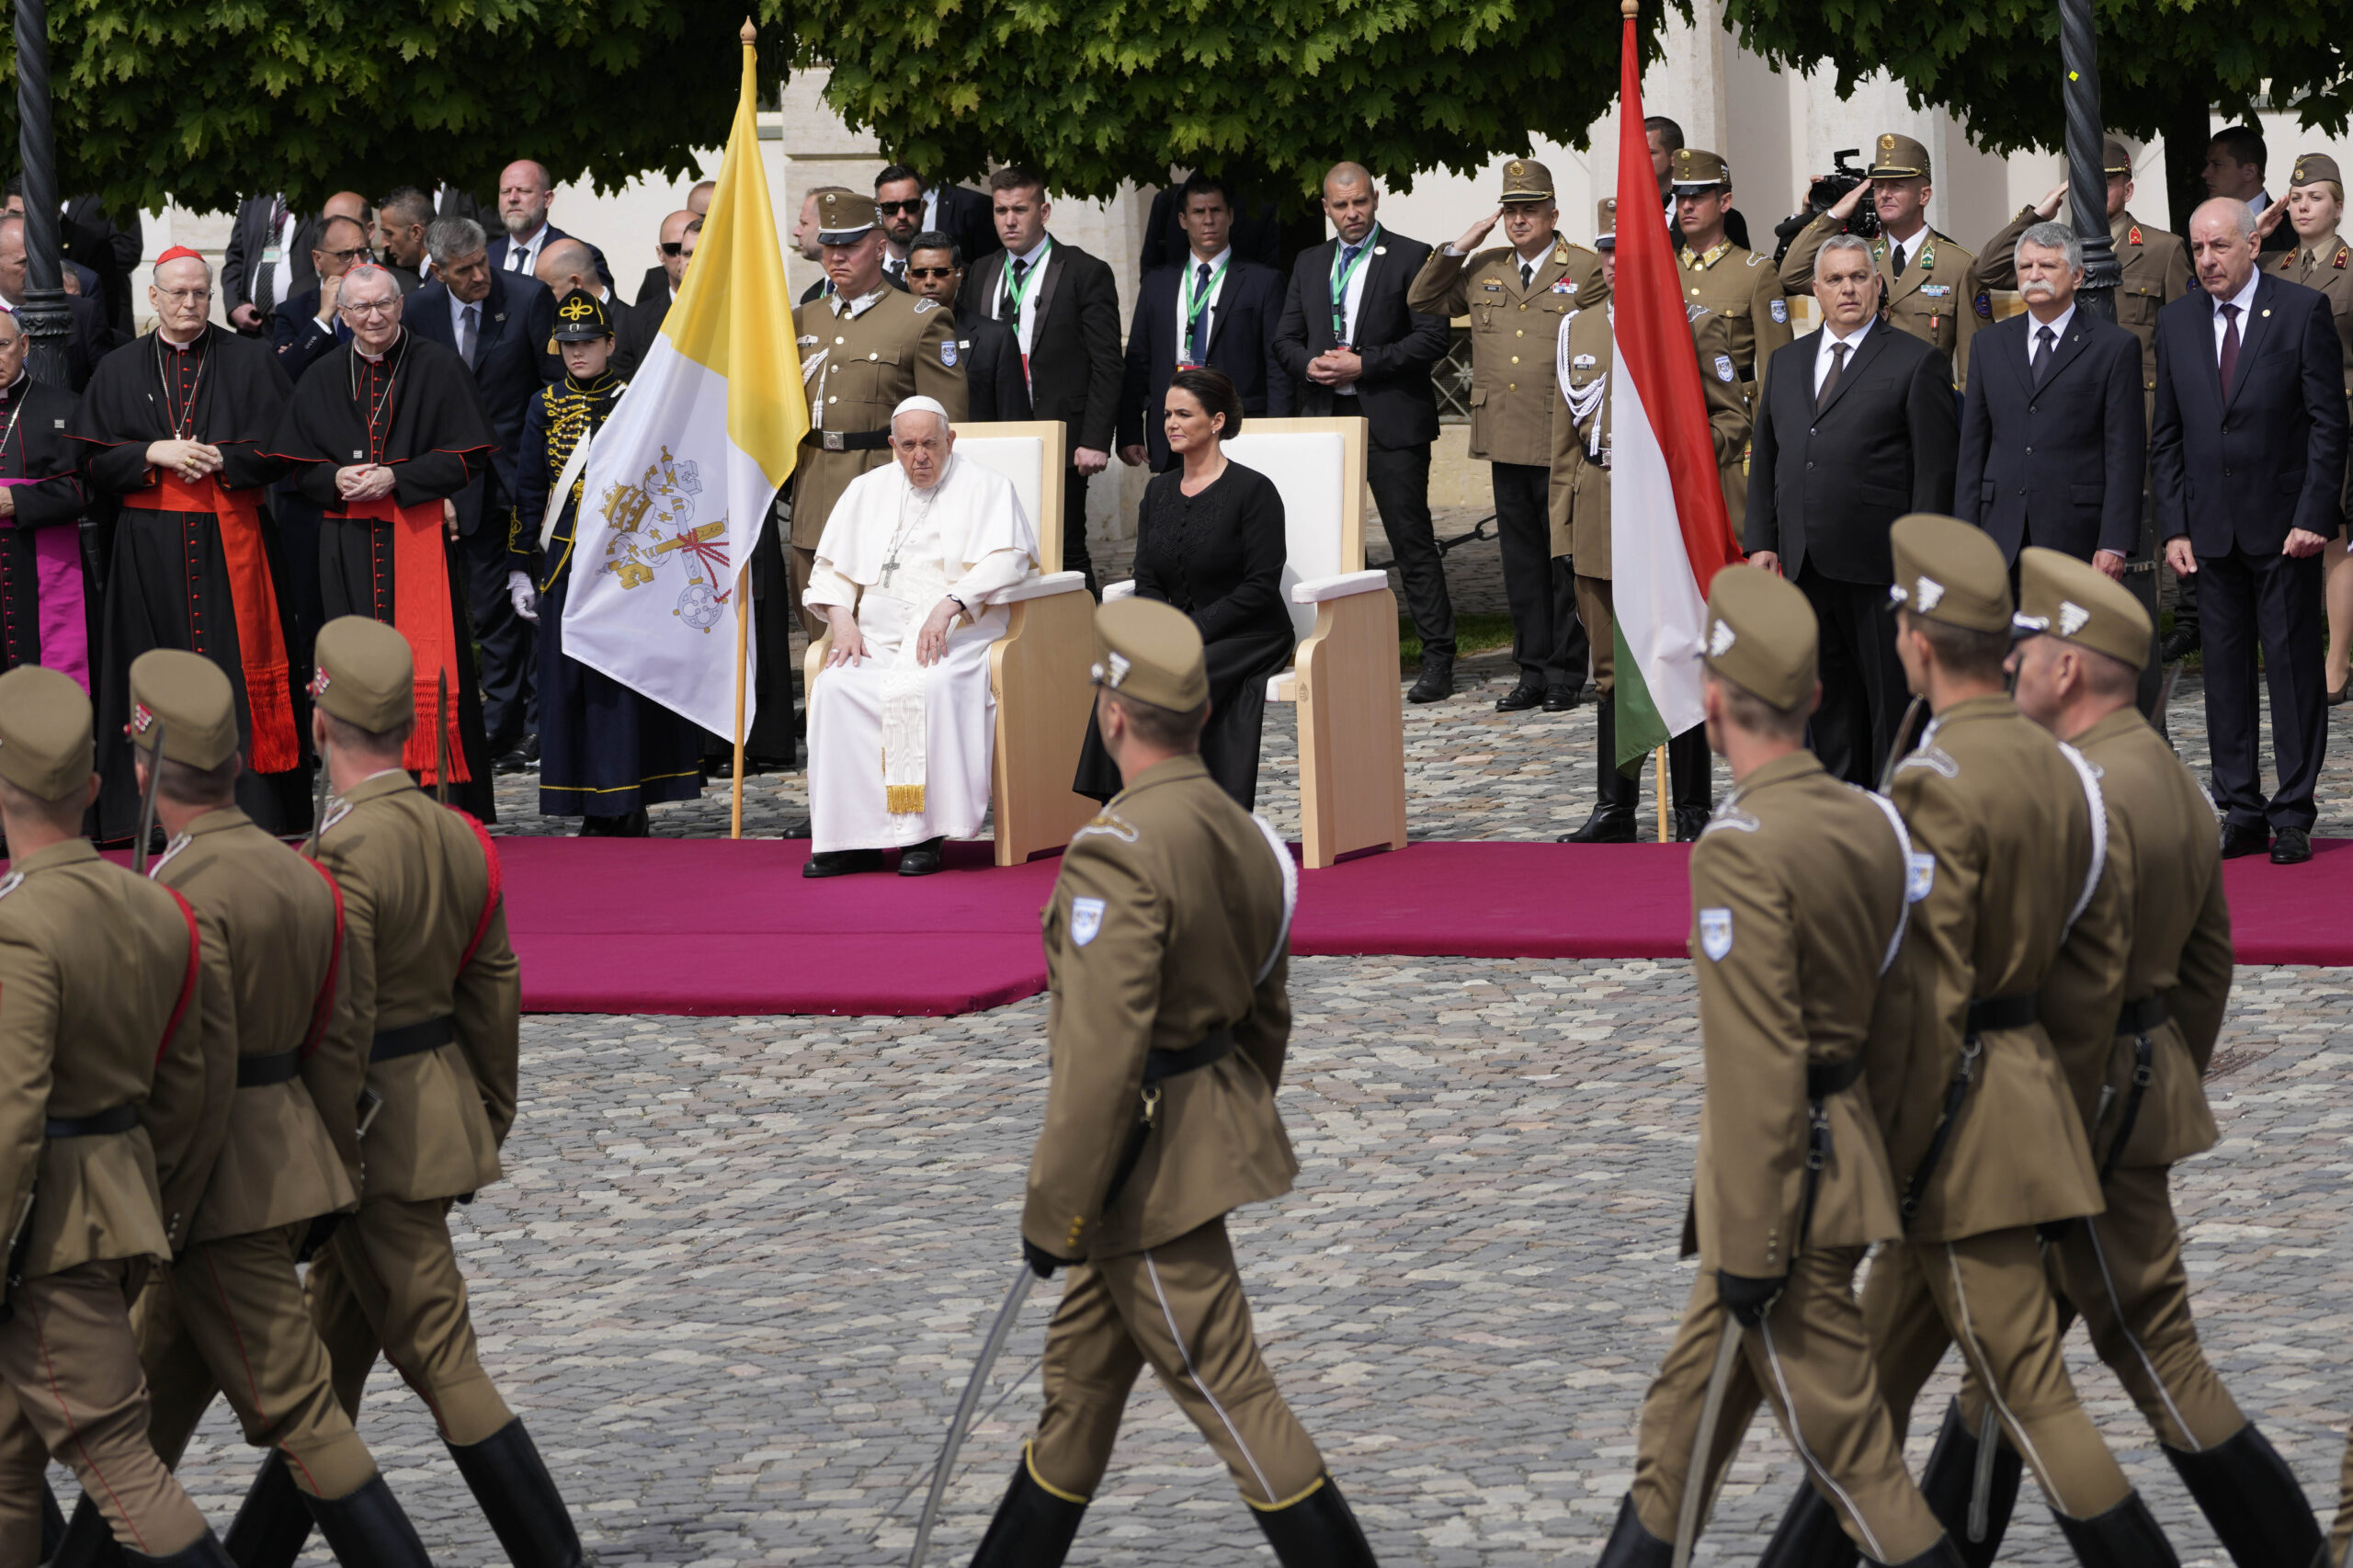 Ουγγαρία: Έδωσε χάρη σε καταδικασμένο αρχηγό ακροδεξιάς οργάνωσης για να «τιμήσει» την επίσκεψη του Πάπα